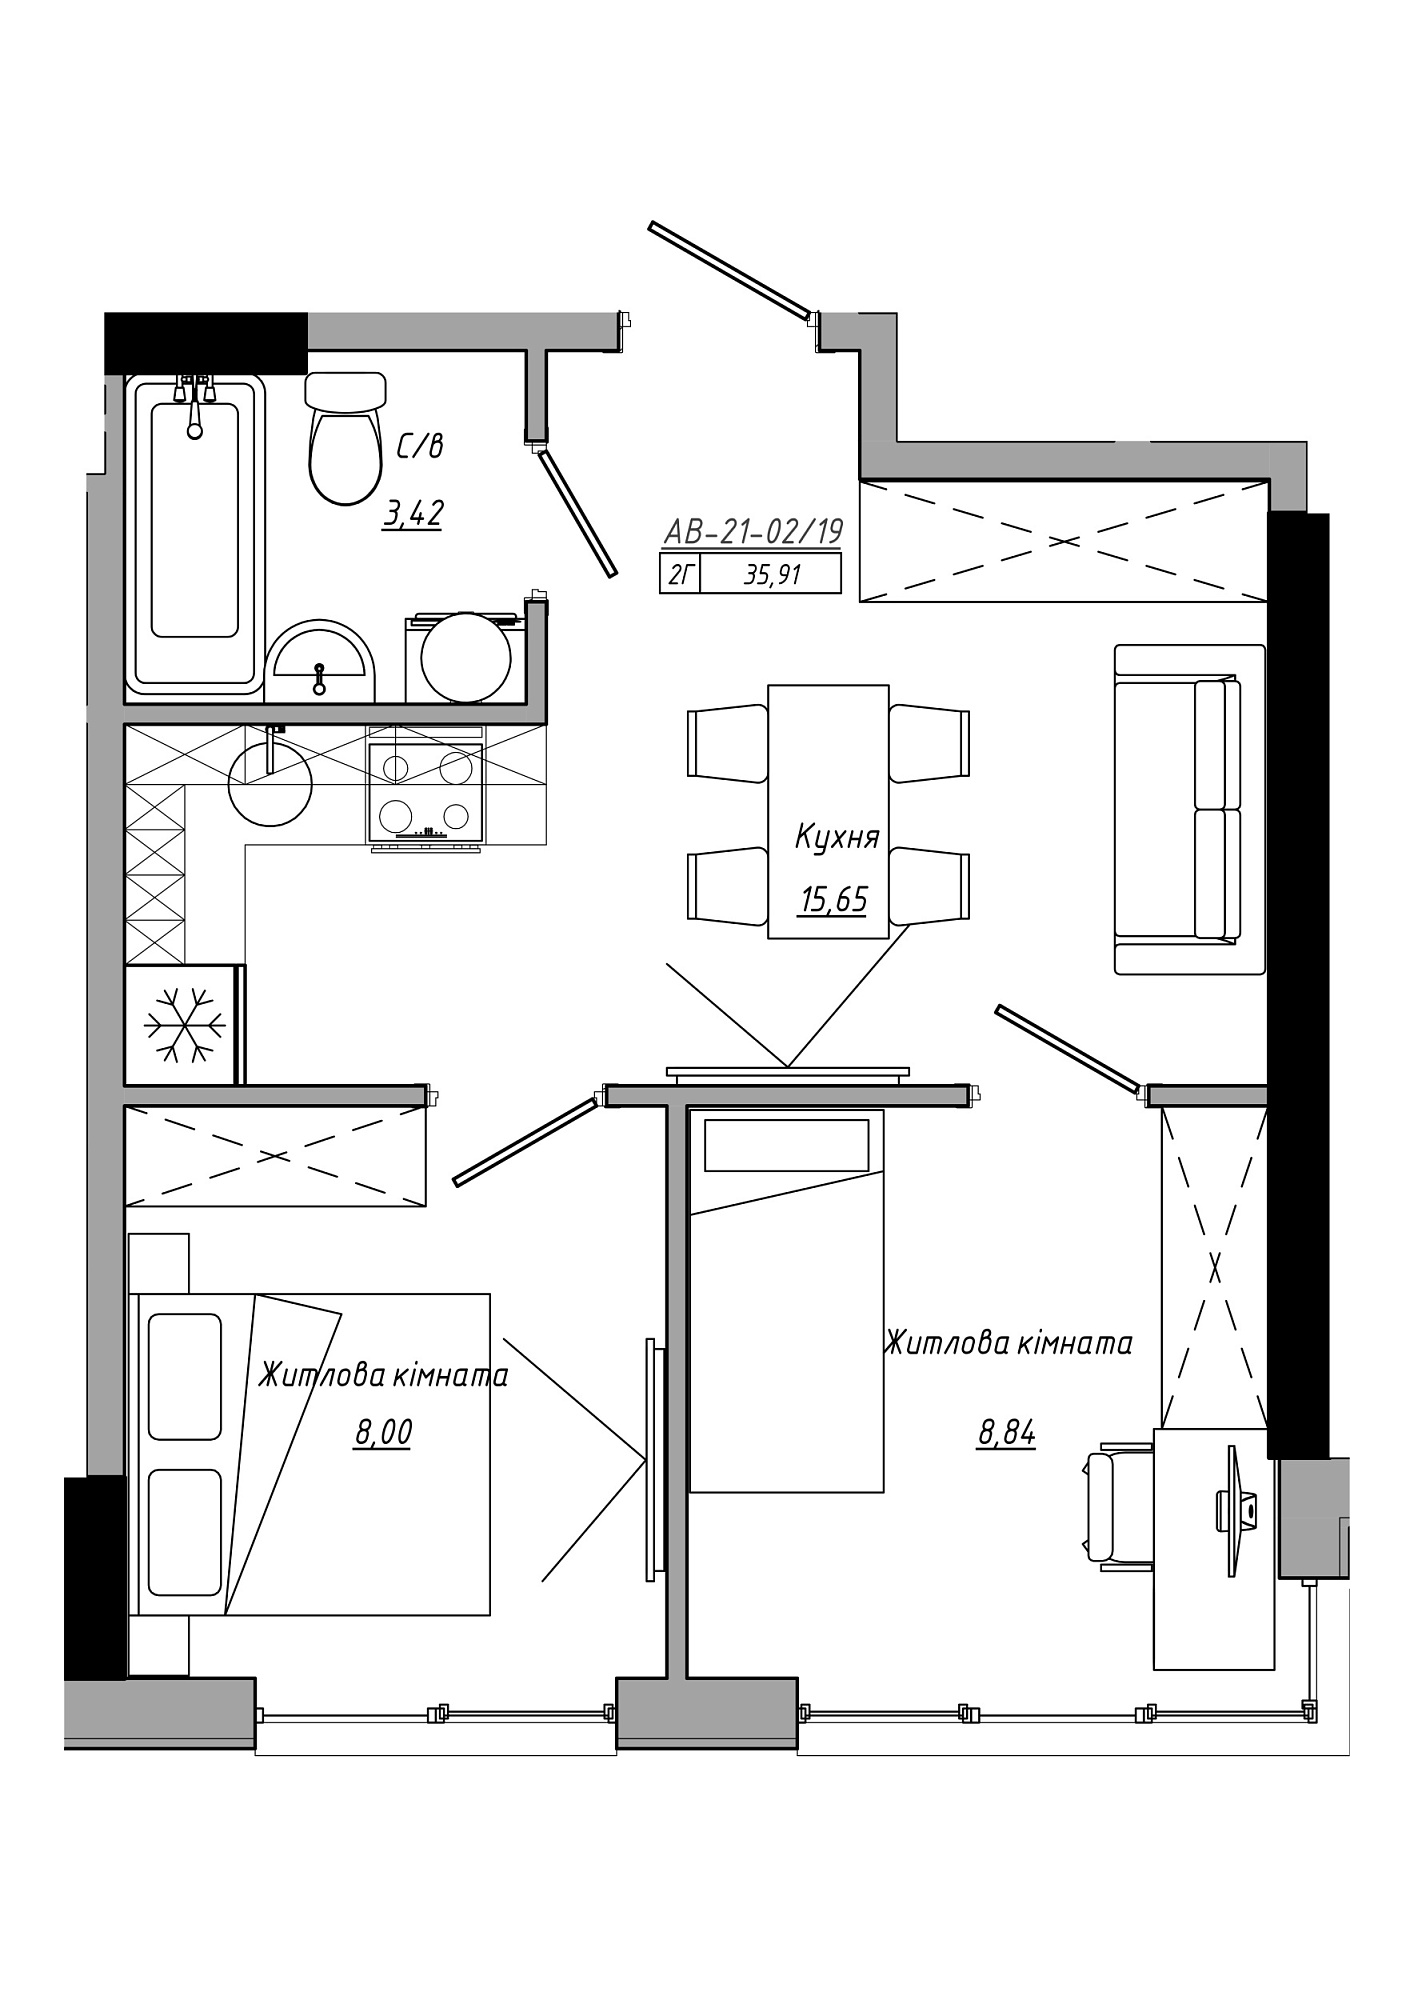 Планування 2-к квартира площею 35.91м2, AB-21-02/00019.